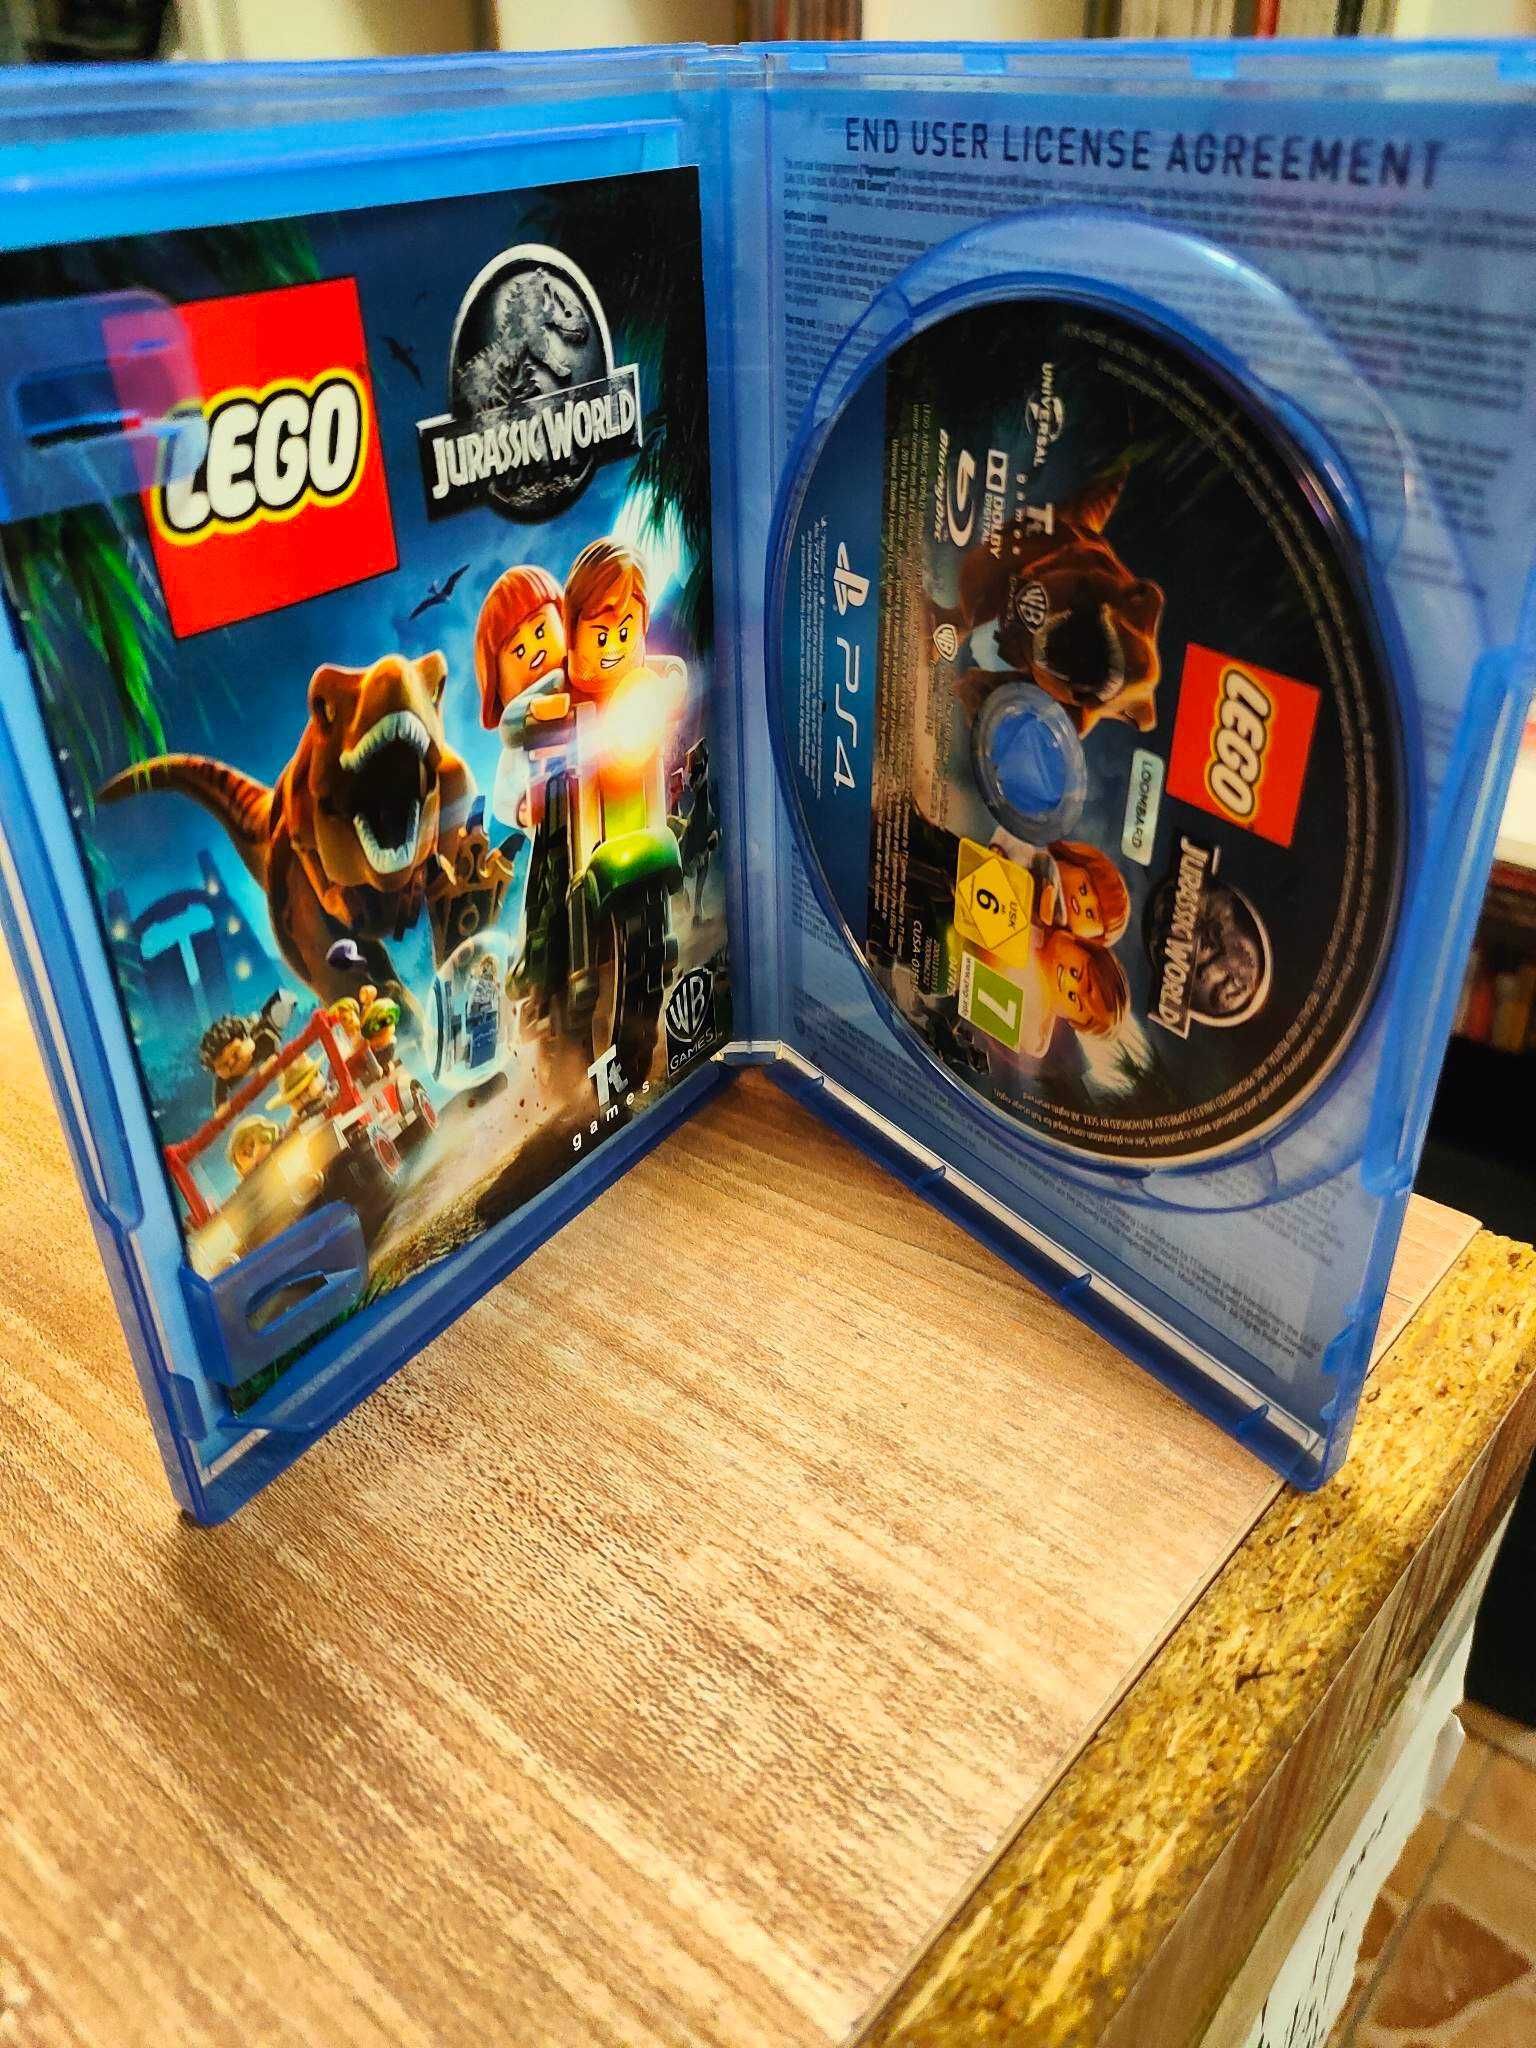 LEGO Jurassic World PS4 Sklep Wysyłka Wymiana